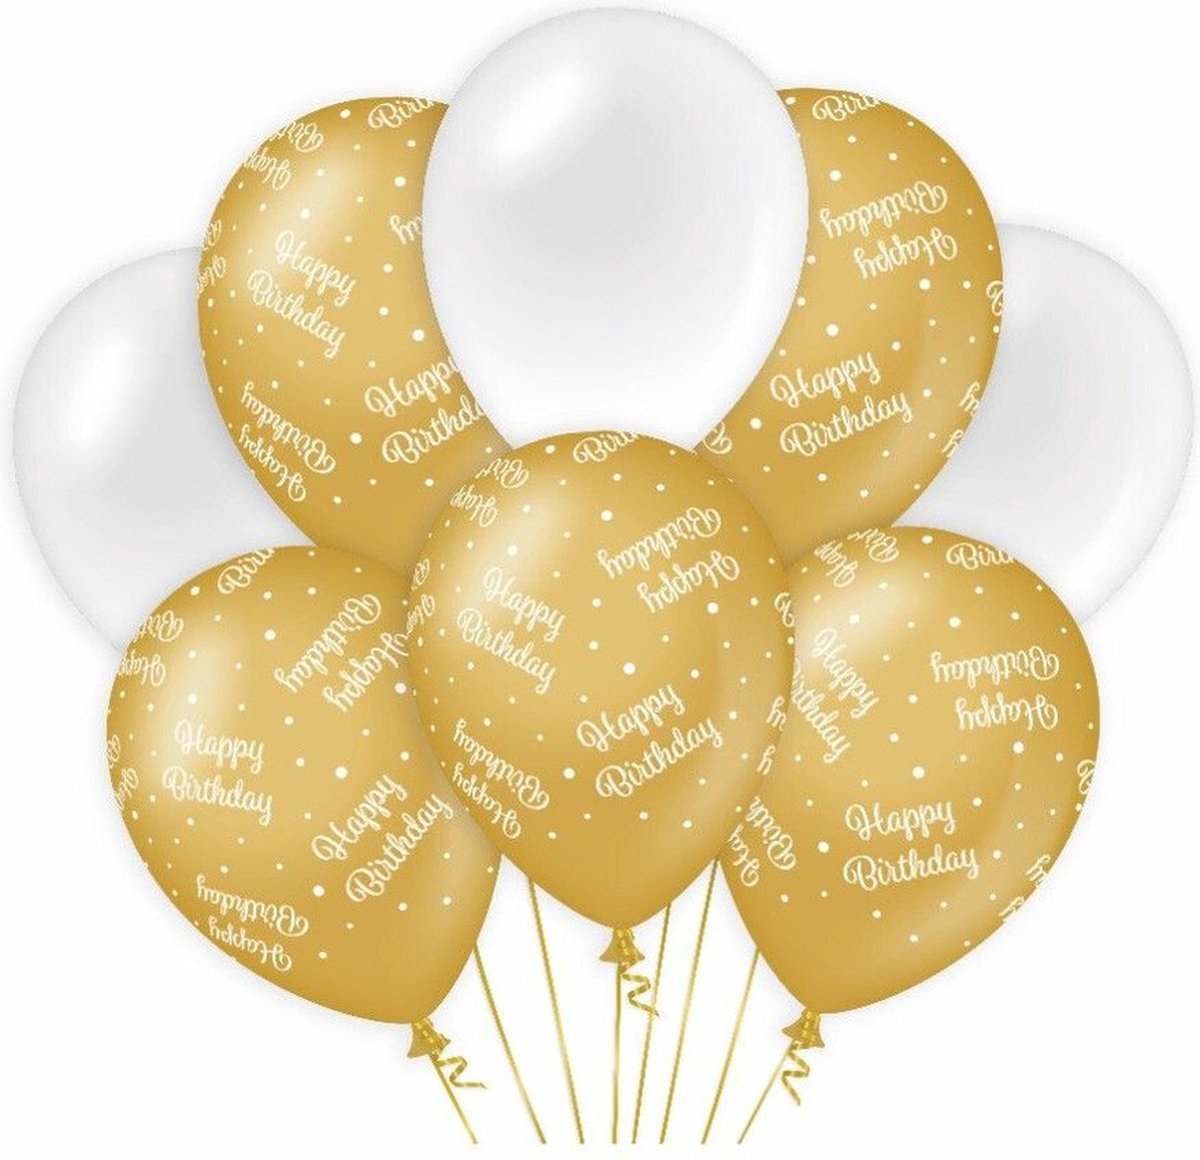 Paperdreams Happy Birthday thema Ballonnen - 24x - goud/wit - Verjaardag feestartikelen